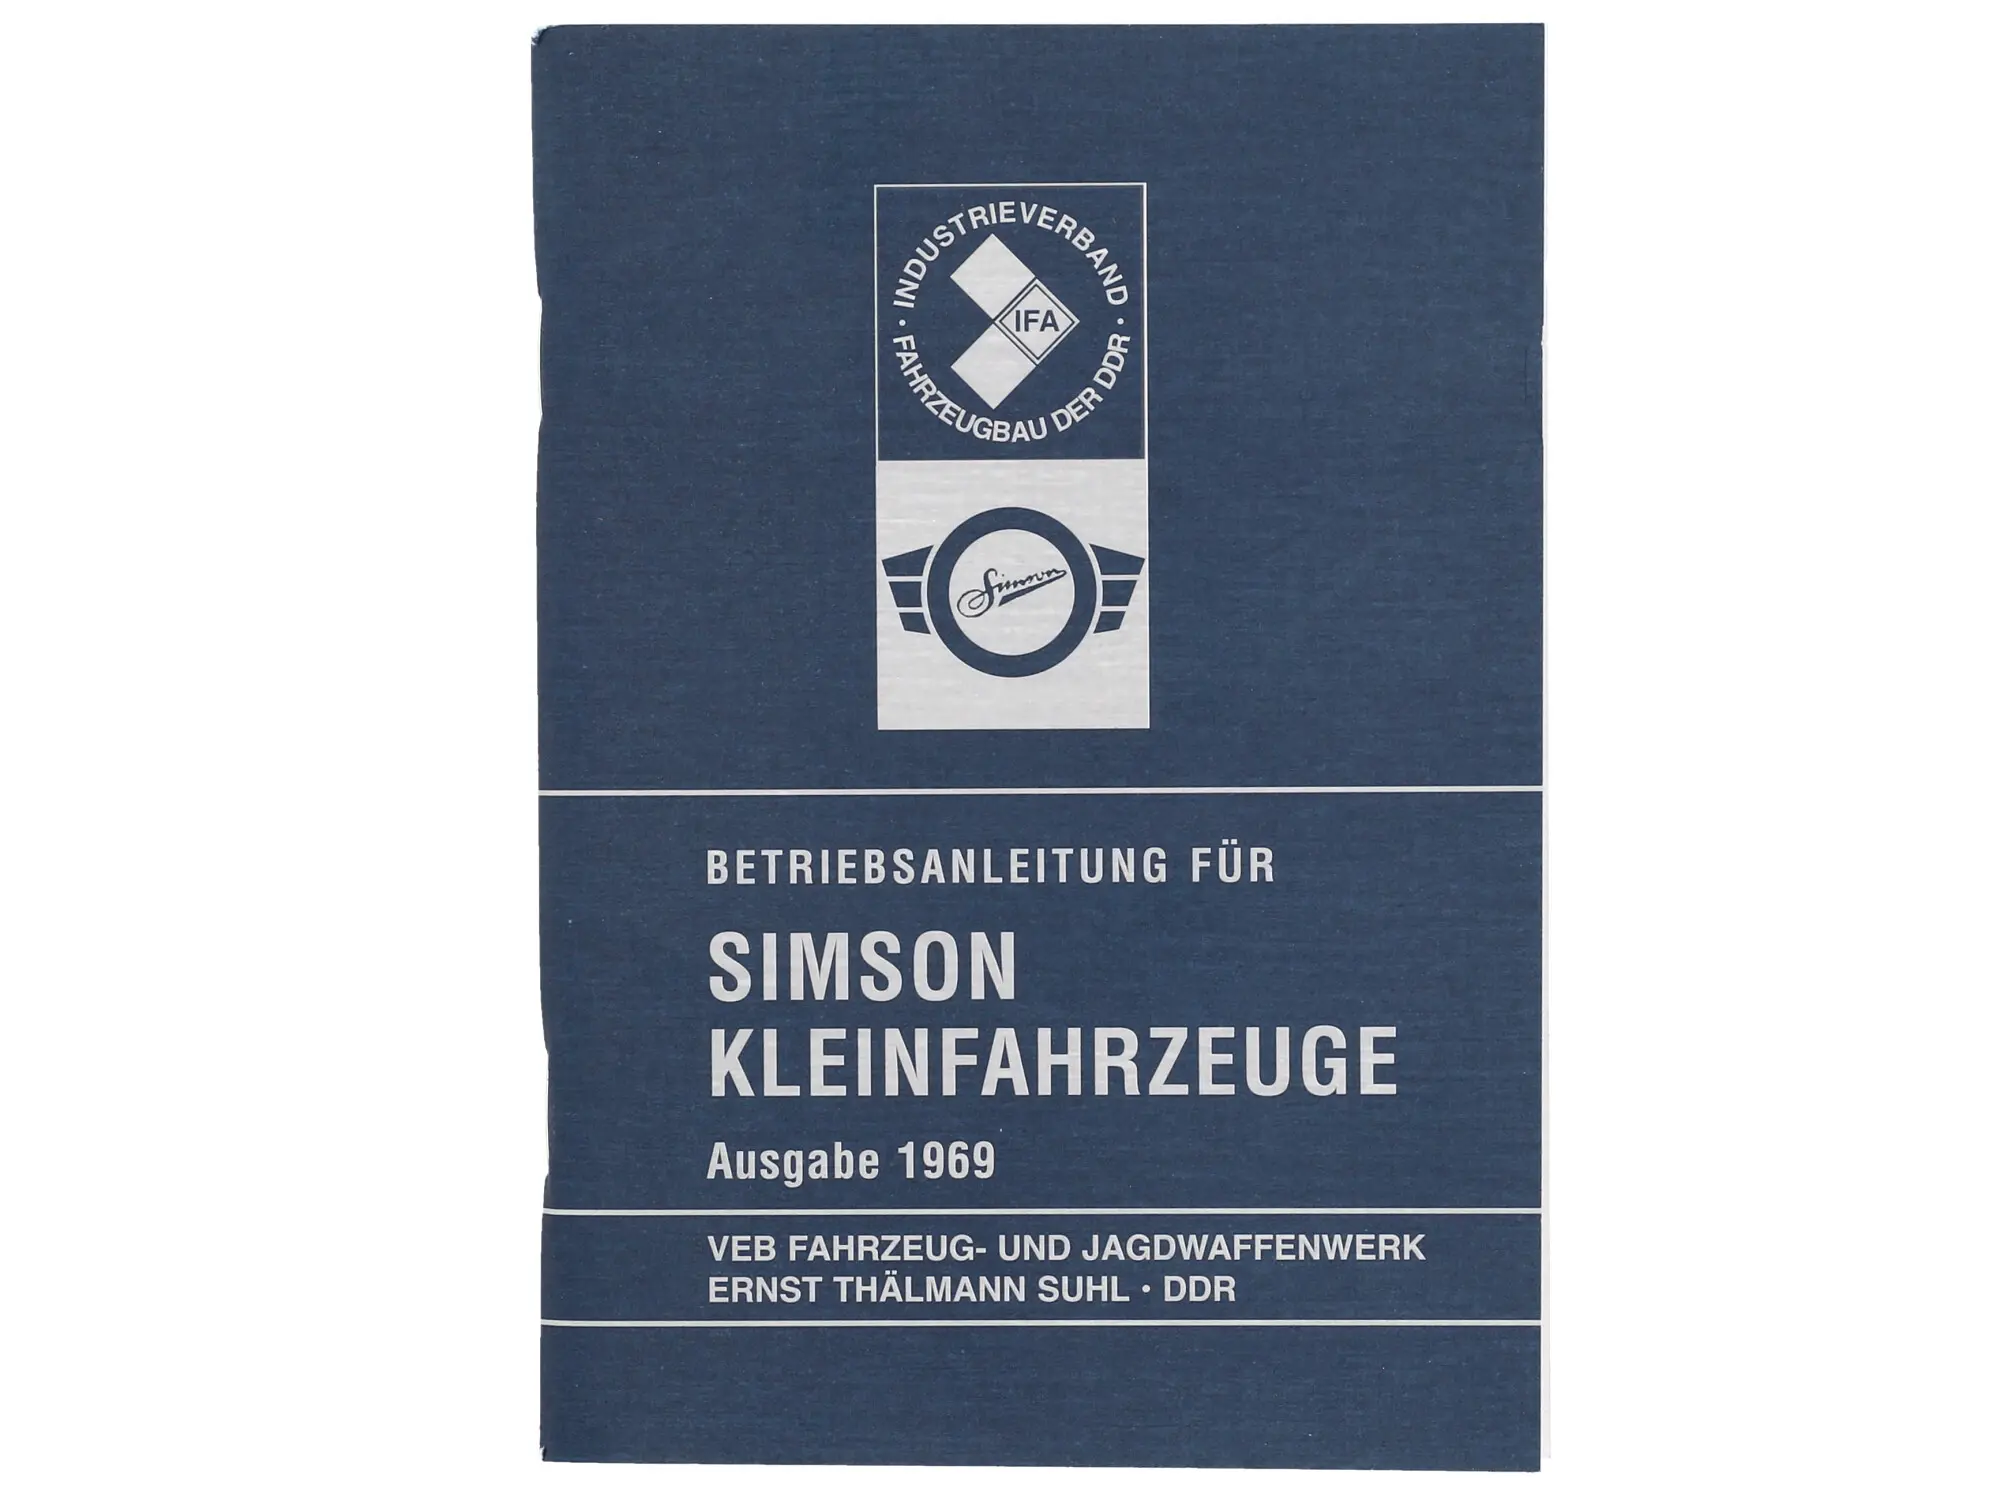 Betriebsanleitung für Simson Kleinfahrzeuge - Ausgabe 1969 mit 16 Bildern, Art.-Nr.: 10058838 - Bild 1